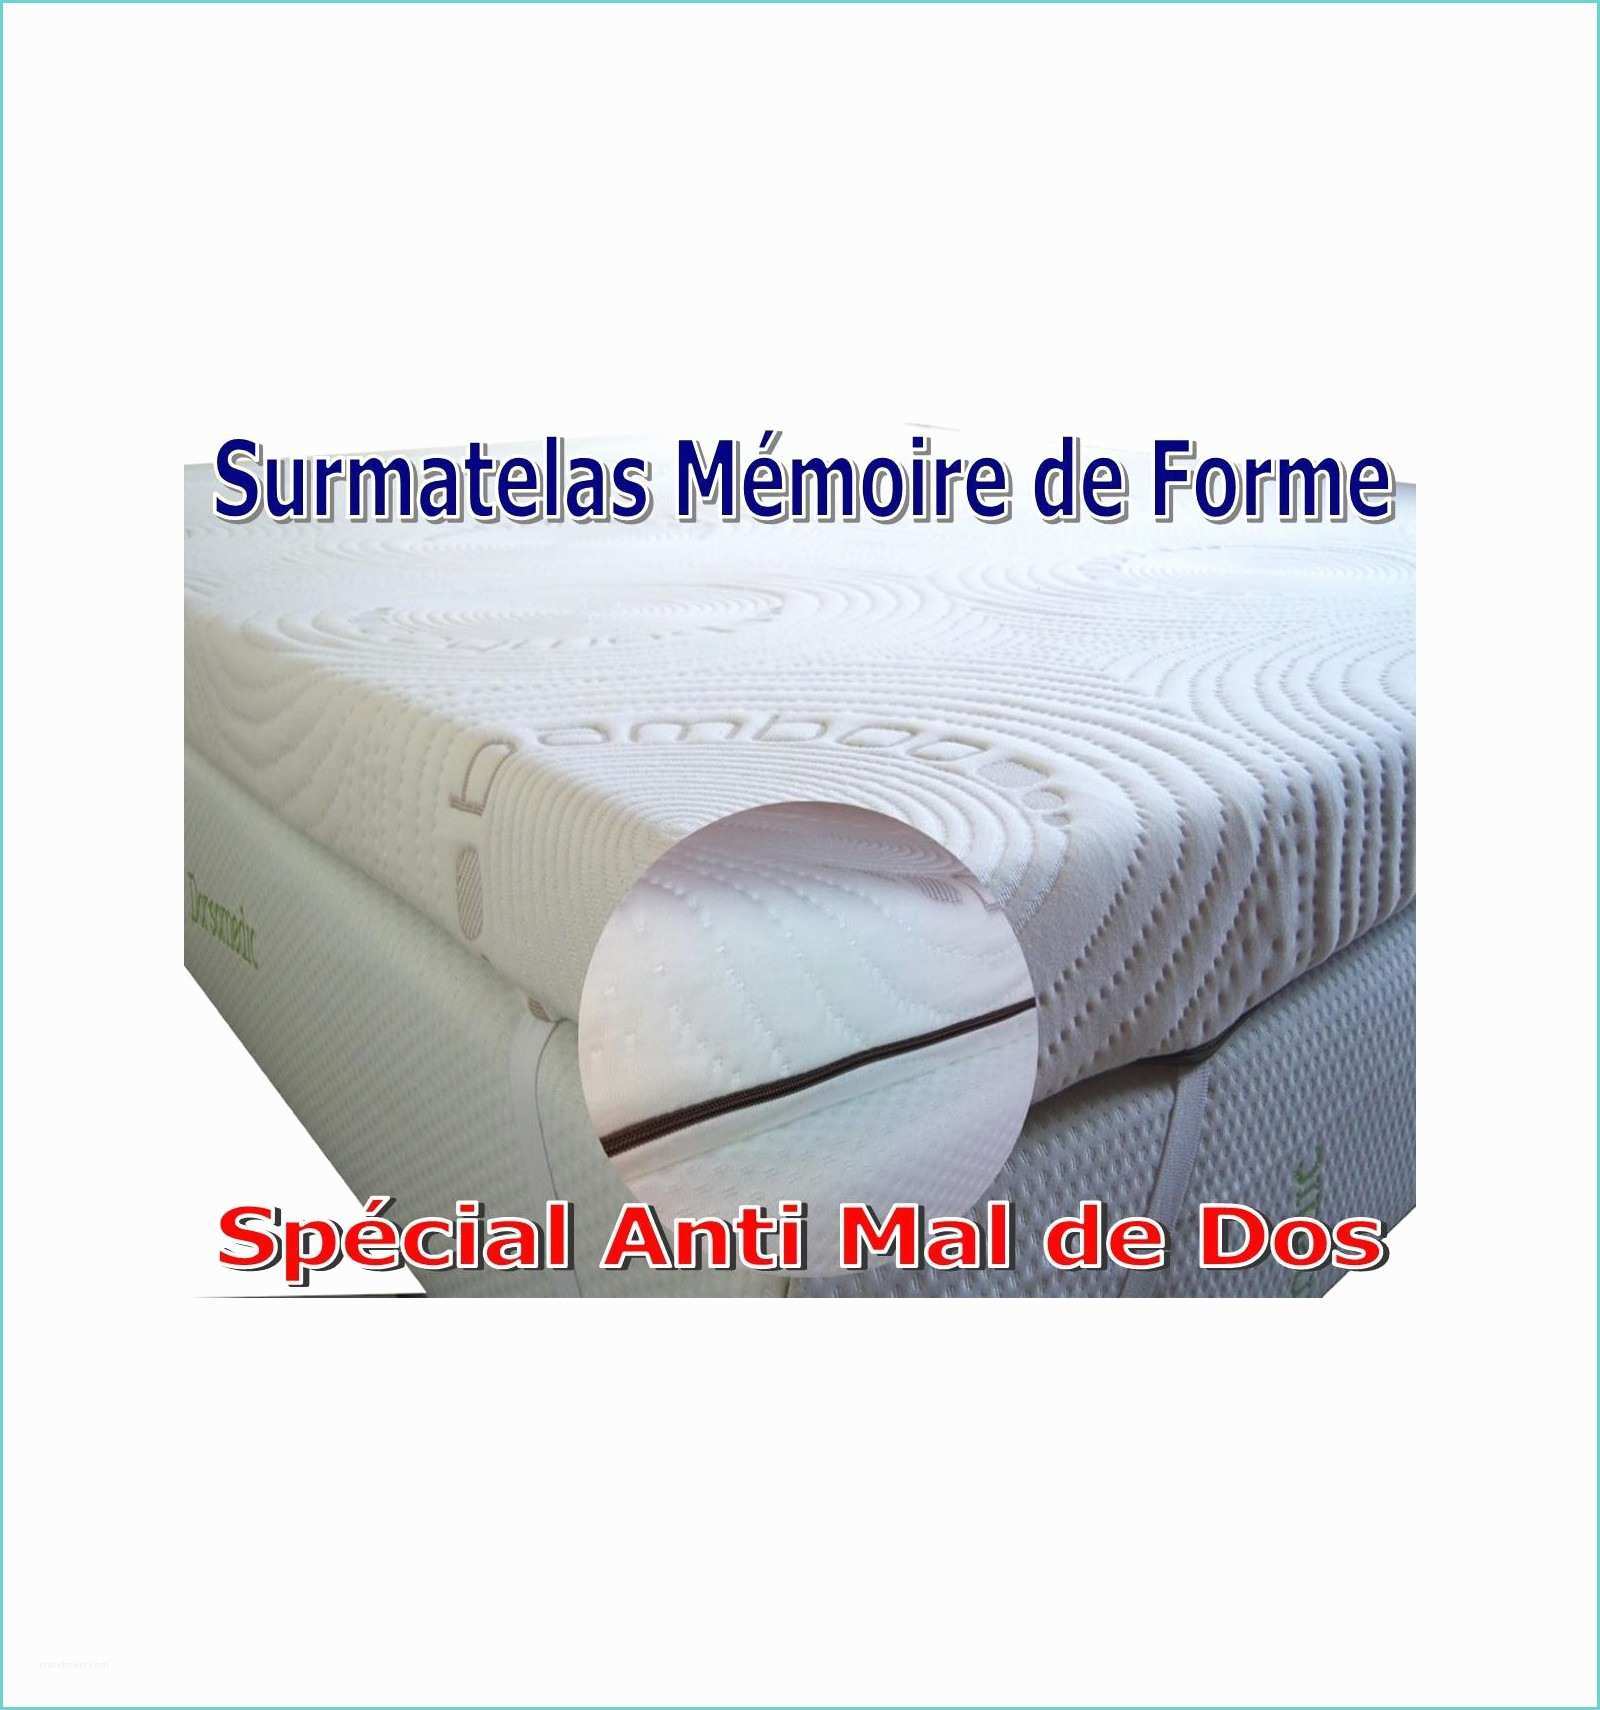 Surmatelas Memoire De forme Amazon Surmatelas Medical 140x190 à Mémoire De forme Contre Les